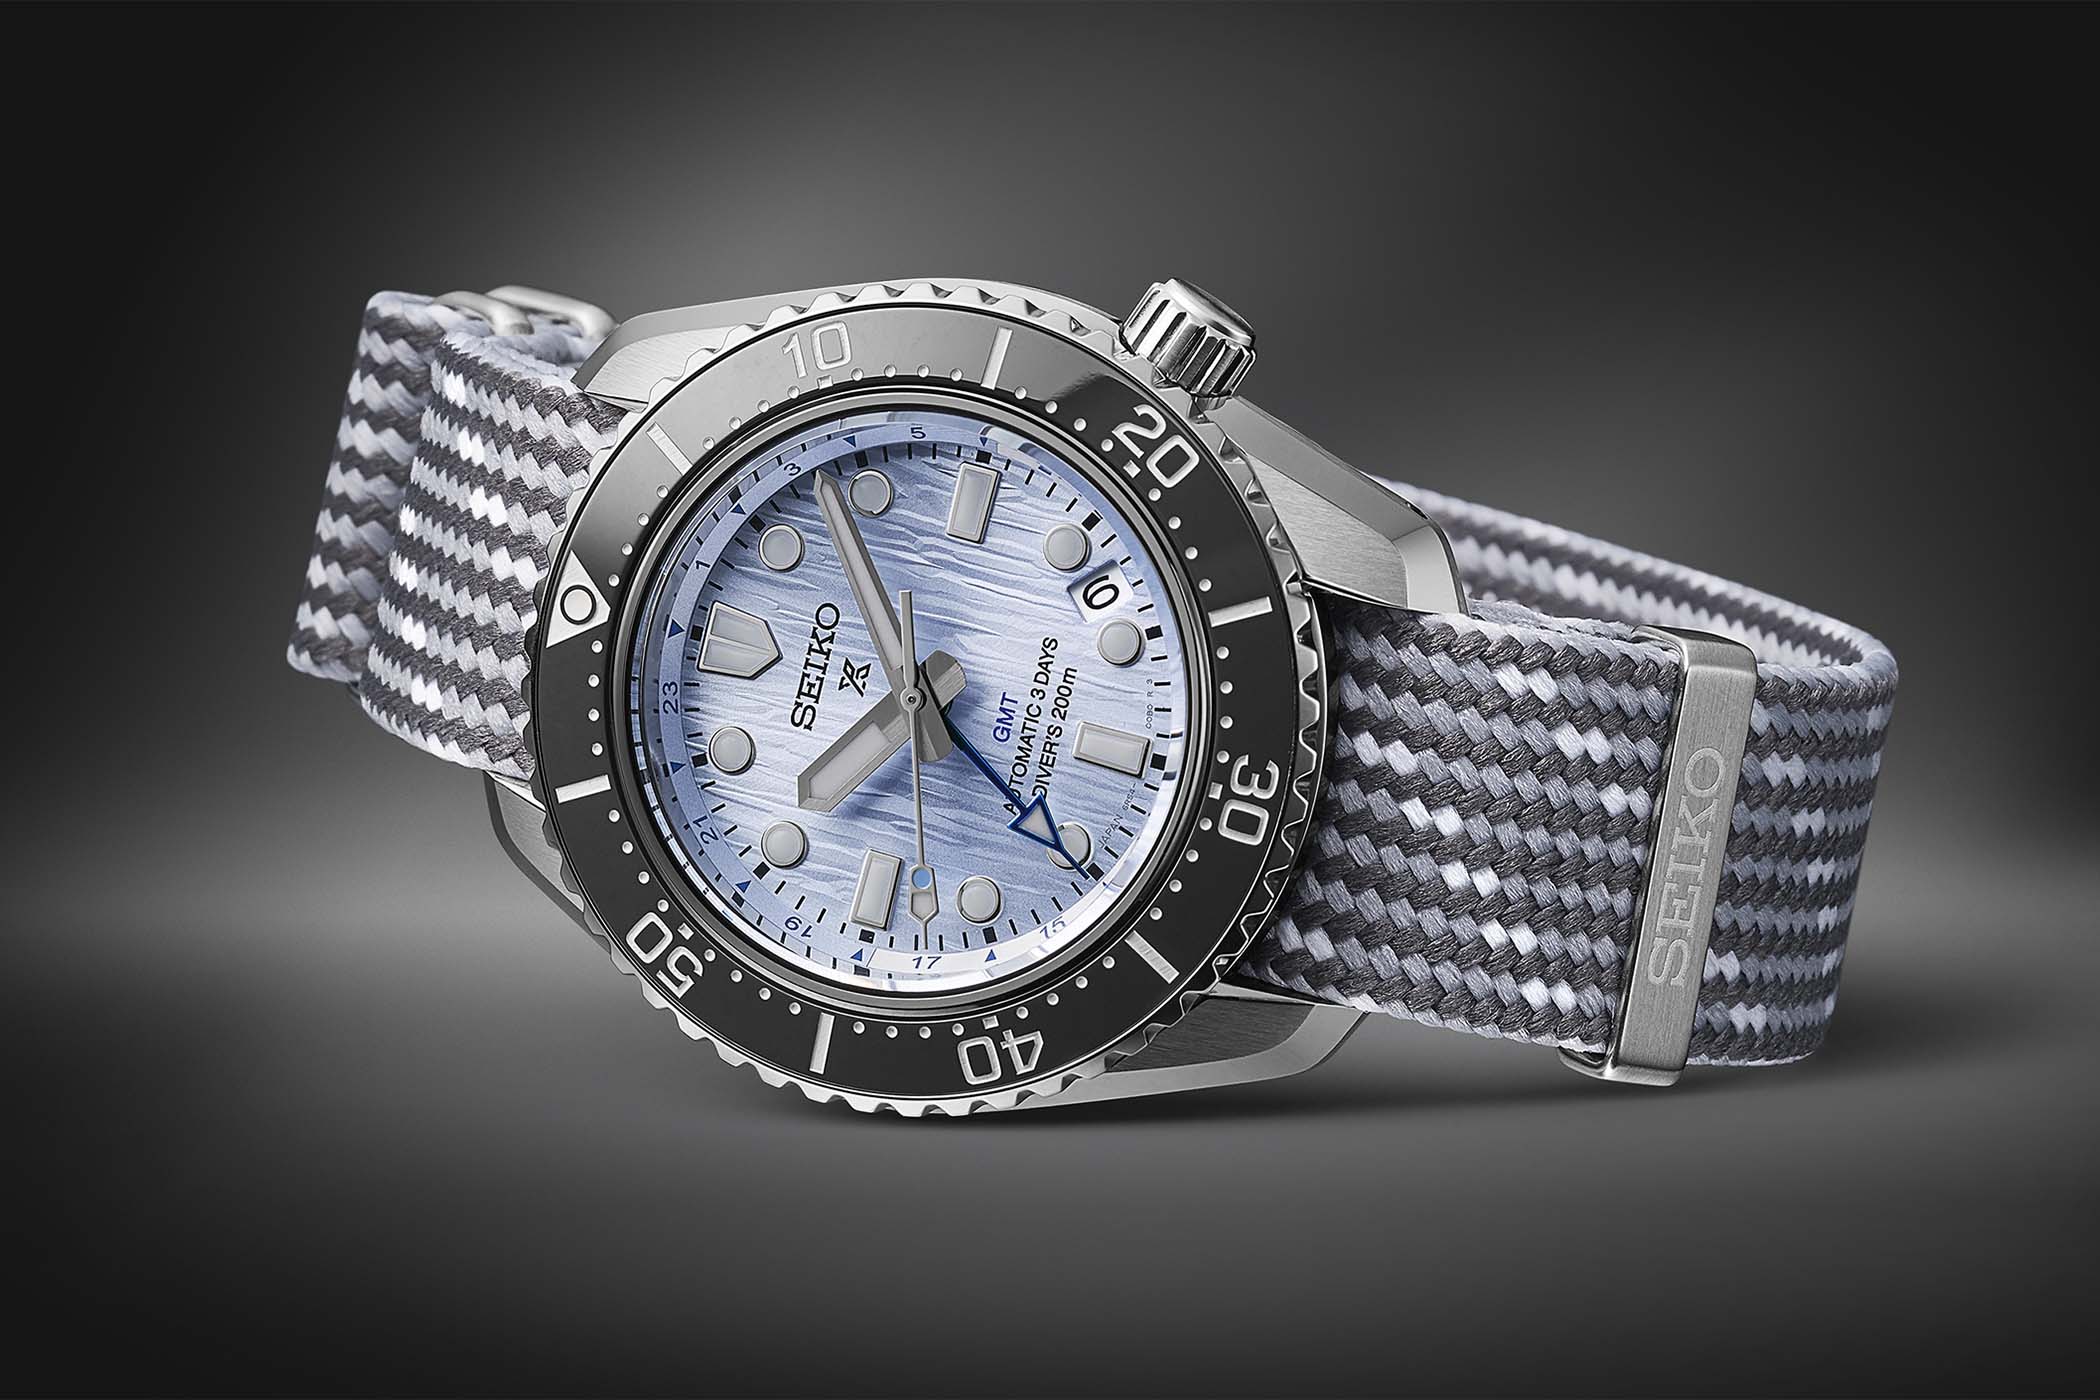 Seiko Prospex 1968 Diver Modern Reinterpretation GMT - First Prospex Mechanical GMT Watch